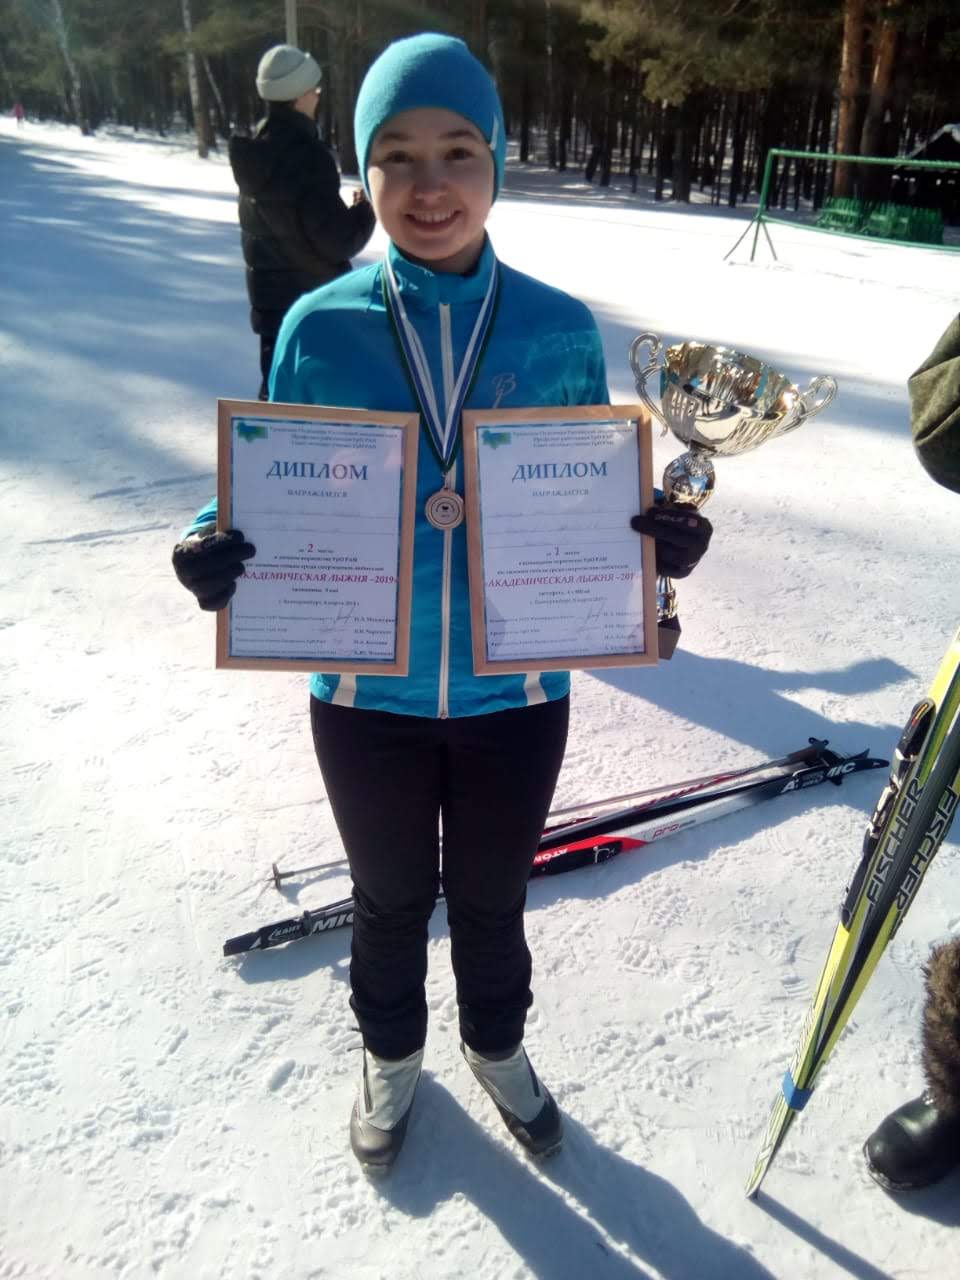 Gertzen ski win 2019 1